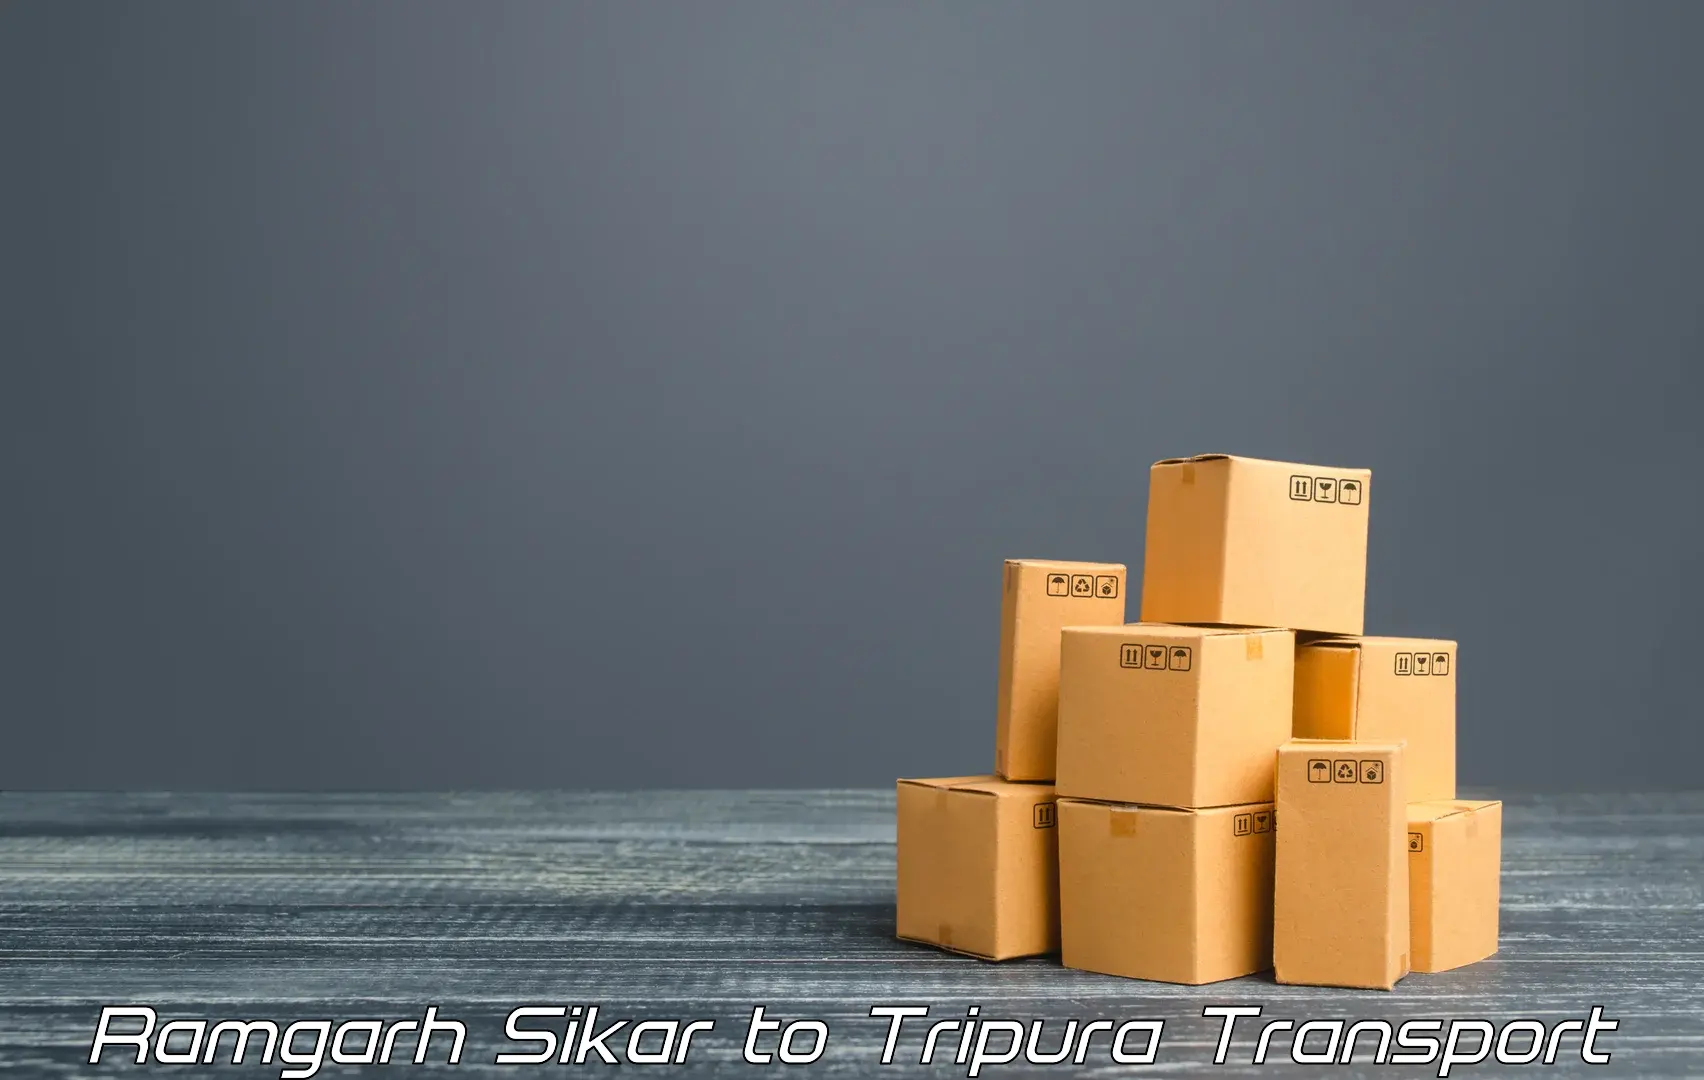 International cargo transportation services Ramgarh Sikar to North Tripura